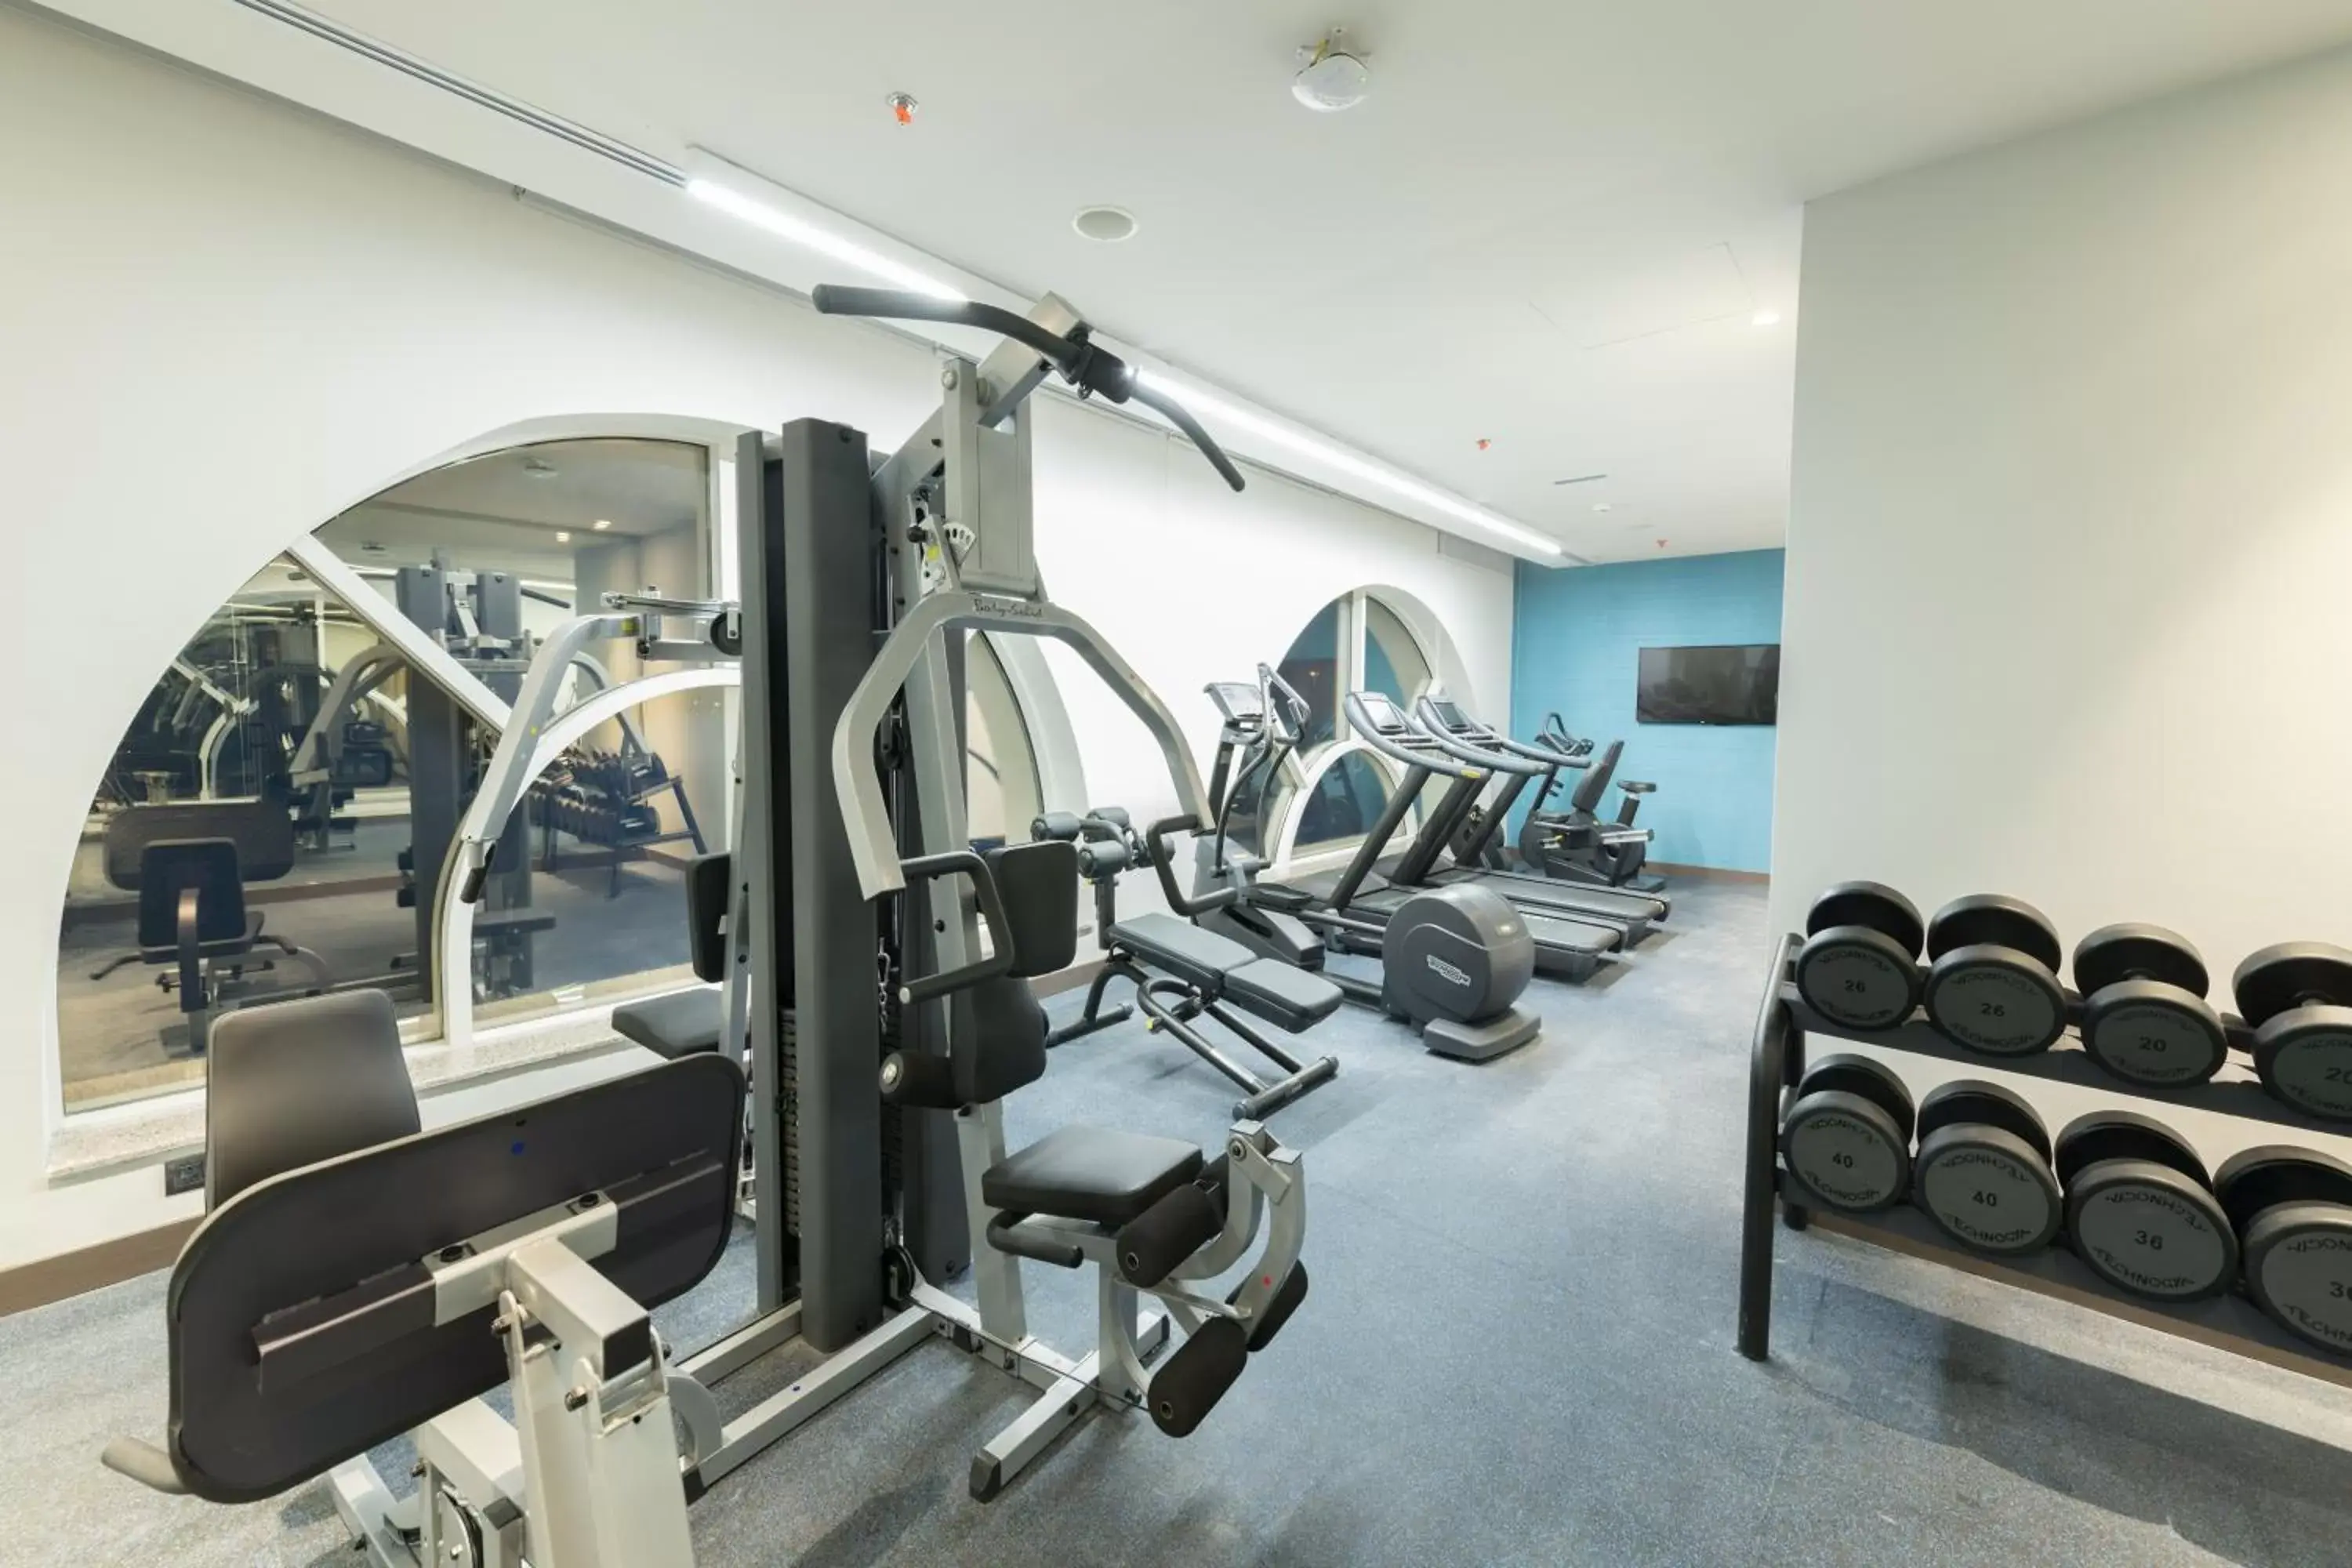 Fitness centre/facilities, Fitness Center/Facilities in Radisson Blu Hotel, Jeddah Corniche